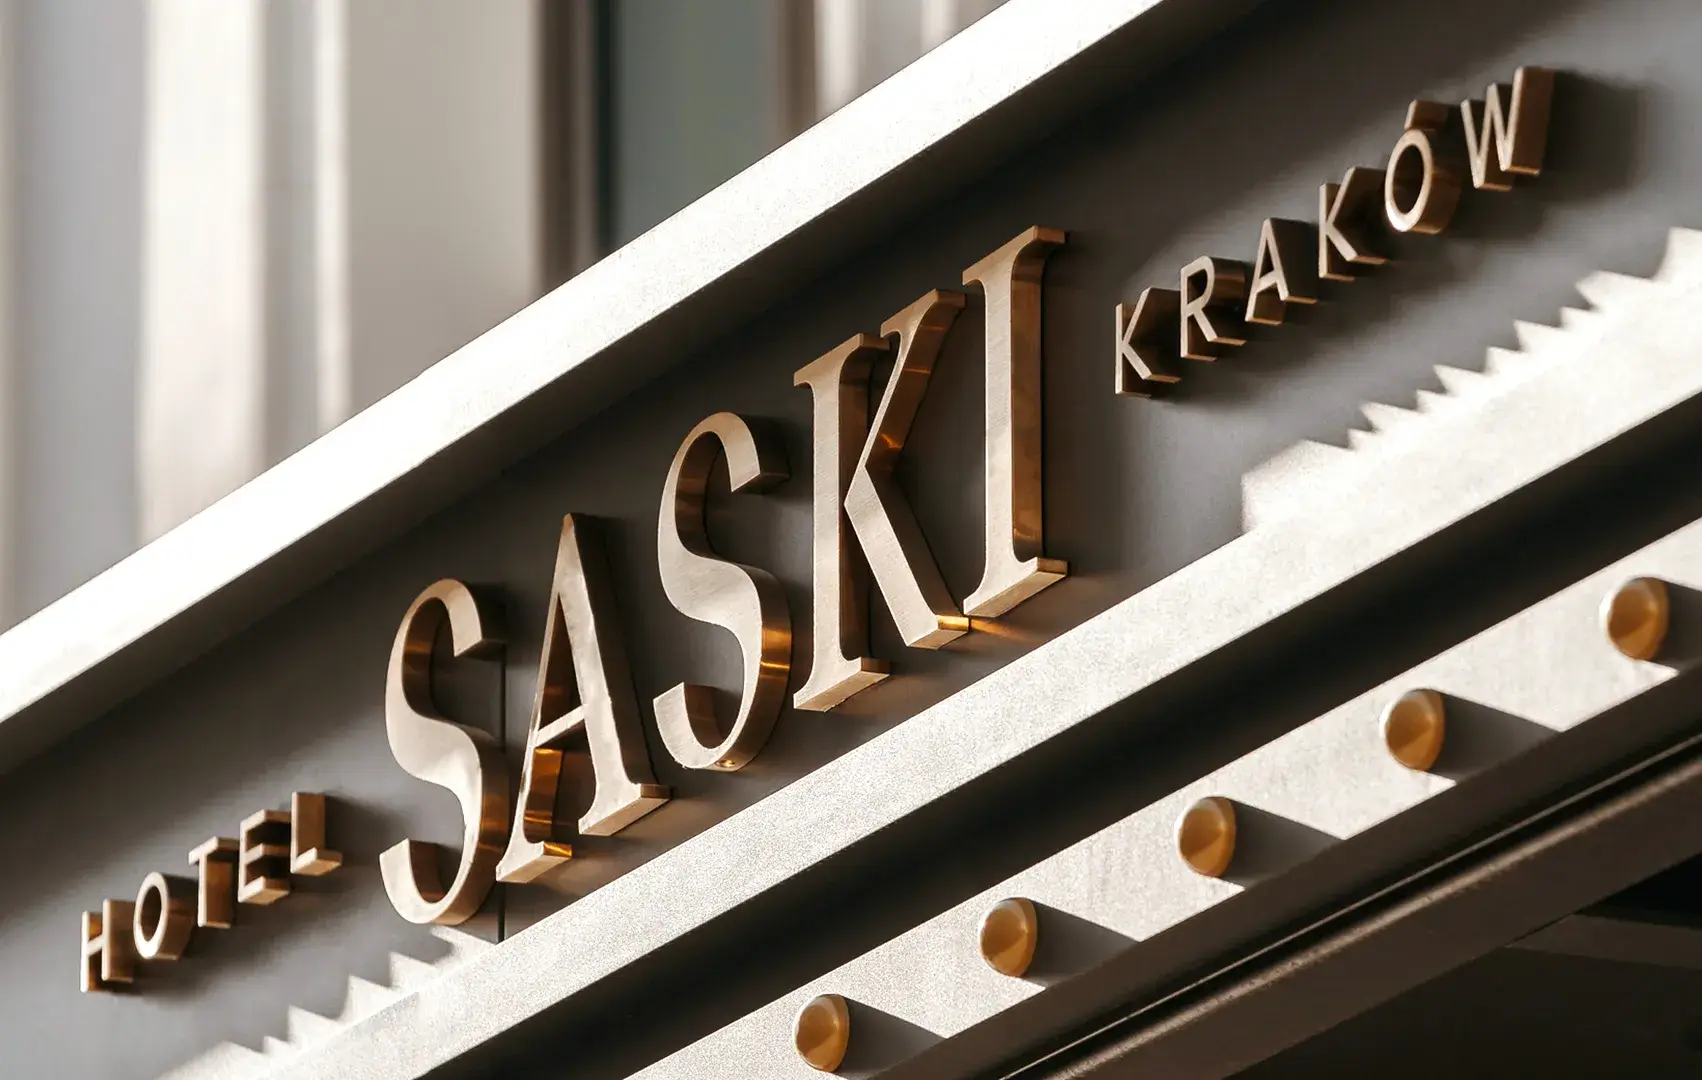 Letras de acero inoxidable cepillado en oro en el exterior del edificio del Hotel Saski